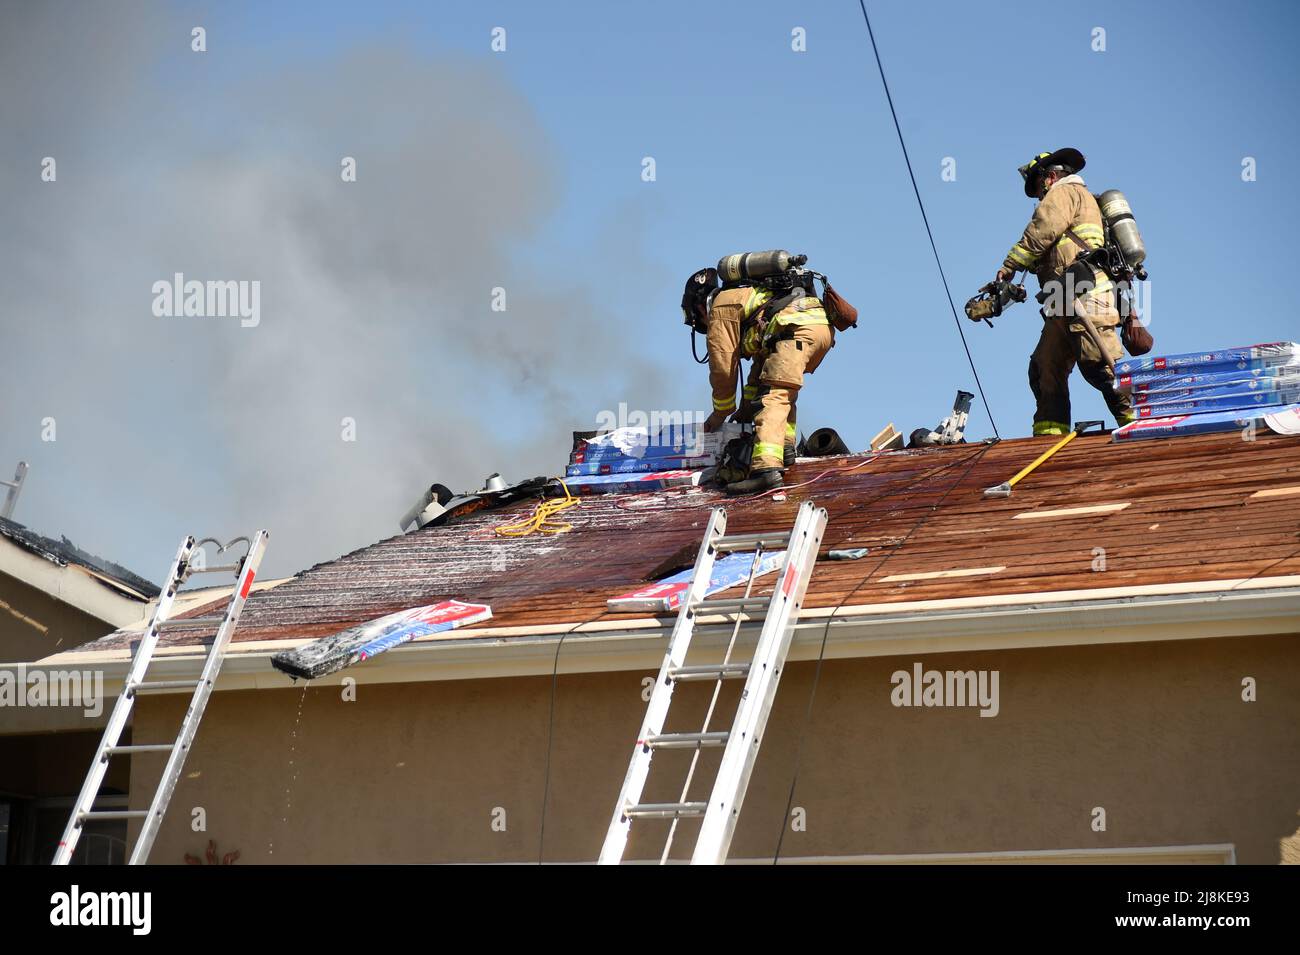 Ein Hausbrand im Stadtteil Kearny Mesa von San Diego führte zu einem ersten Alarmeinsatz der Feuerwehr von San Diego. Das sich schnell bewegende Feuer zerstörte den Wohnteil des Hauses, wobei nur die Garage die Flammen überlebte. Nach einem vollständigen Dacheinsturz über den Wohnräumen mussten die Feuerwehrleute eine Luftleiter verwenden, um die Flammen zu löschen. Die beiden Bewohner des Hauses entkamen unverletzt. Die Ursache des Feuers wurde durch die jüngsten Arbeiten am Dach der Konstruktion bestimmt und der Gesamtschadens wurde auf $400.000 USD festgesetzt. Stockfoto